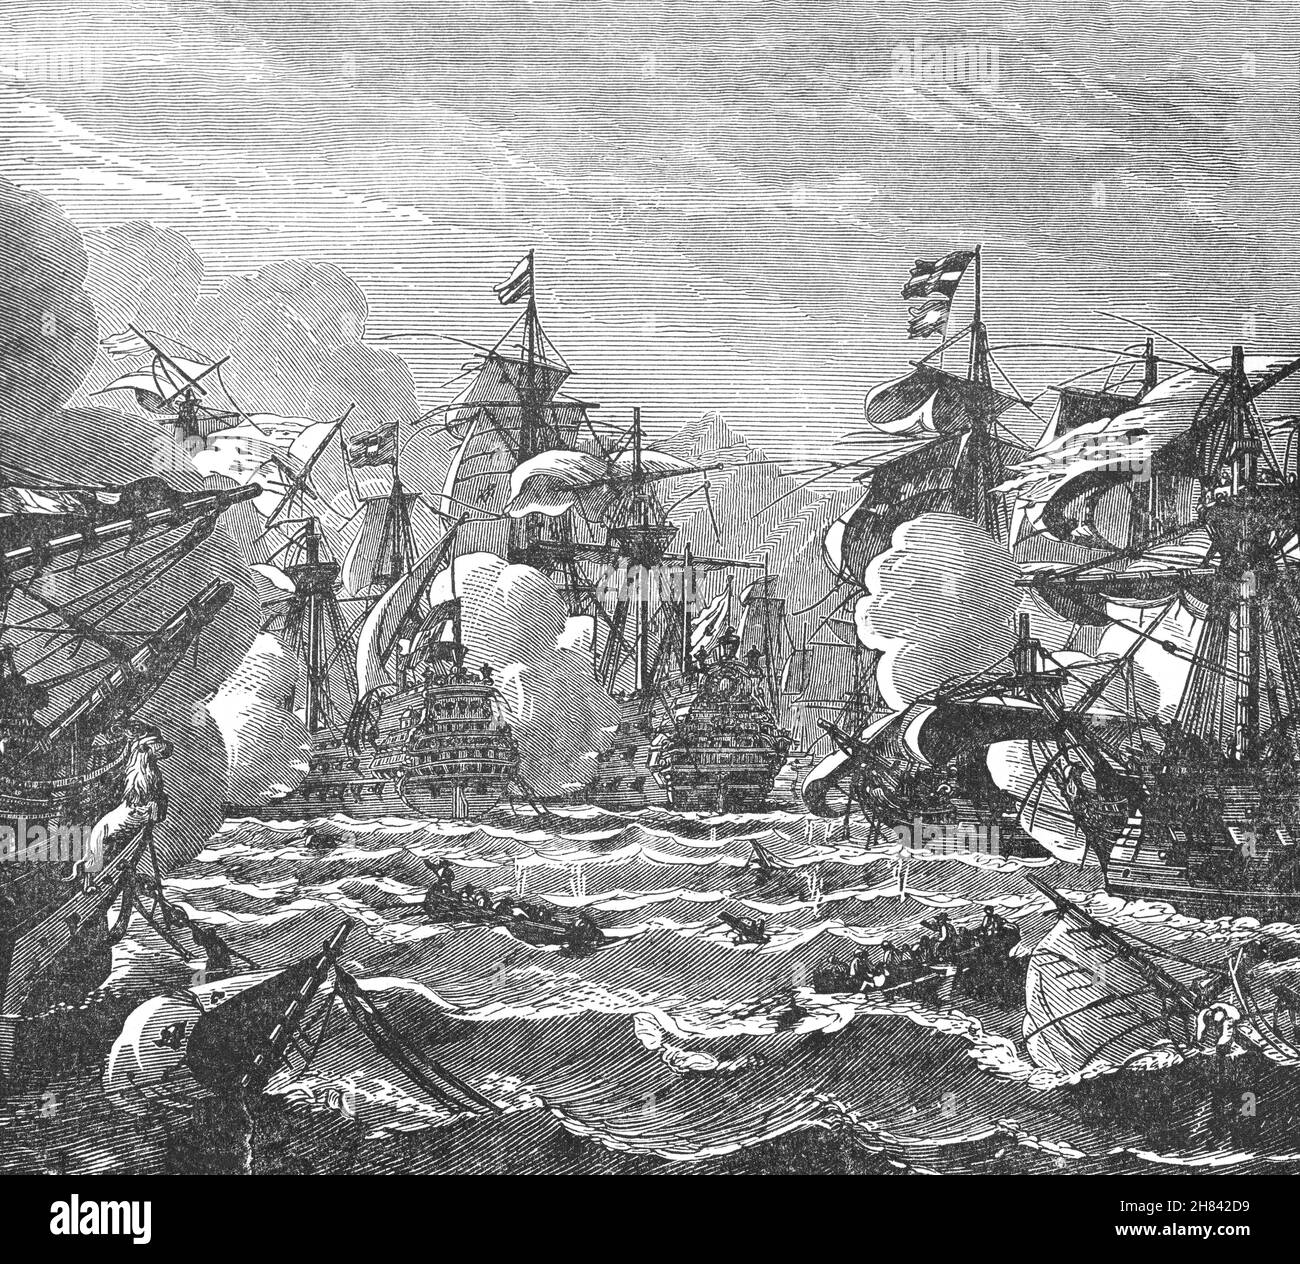 Une illustration de la bataille d'Augusta, ou bataille d'Agosta ou bataille d'Etna, qui a eu lieu le 22 avril 1676 pendant la guerre franco-hollandaise et a été menée entre une flotte française de 29 hommes de guerre, cinq frégates et huit freship sous Abraham Duquesne,Et une flotte hollandaise-espagnole d'au moins 28 navires de guerre, plusieurs frégates et cinq freship avec le lieutenant-amiral-général néerlandais Michiel de Ruyter commandant l'escadron impliqué dans les combats.La bataille s'est terminée quand de Ruyter a habilement arraché son escadron dépassé d'être attaqué des deux côtés par la flotte française. Banque D'Images